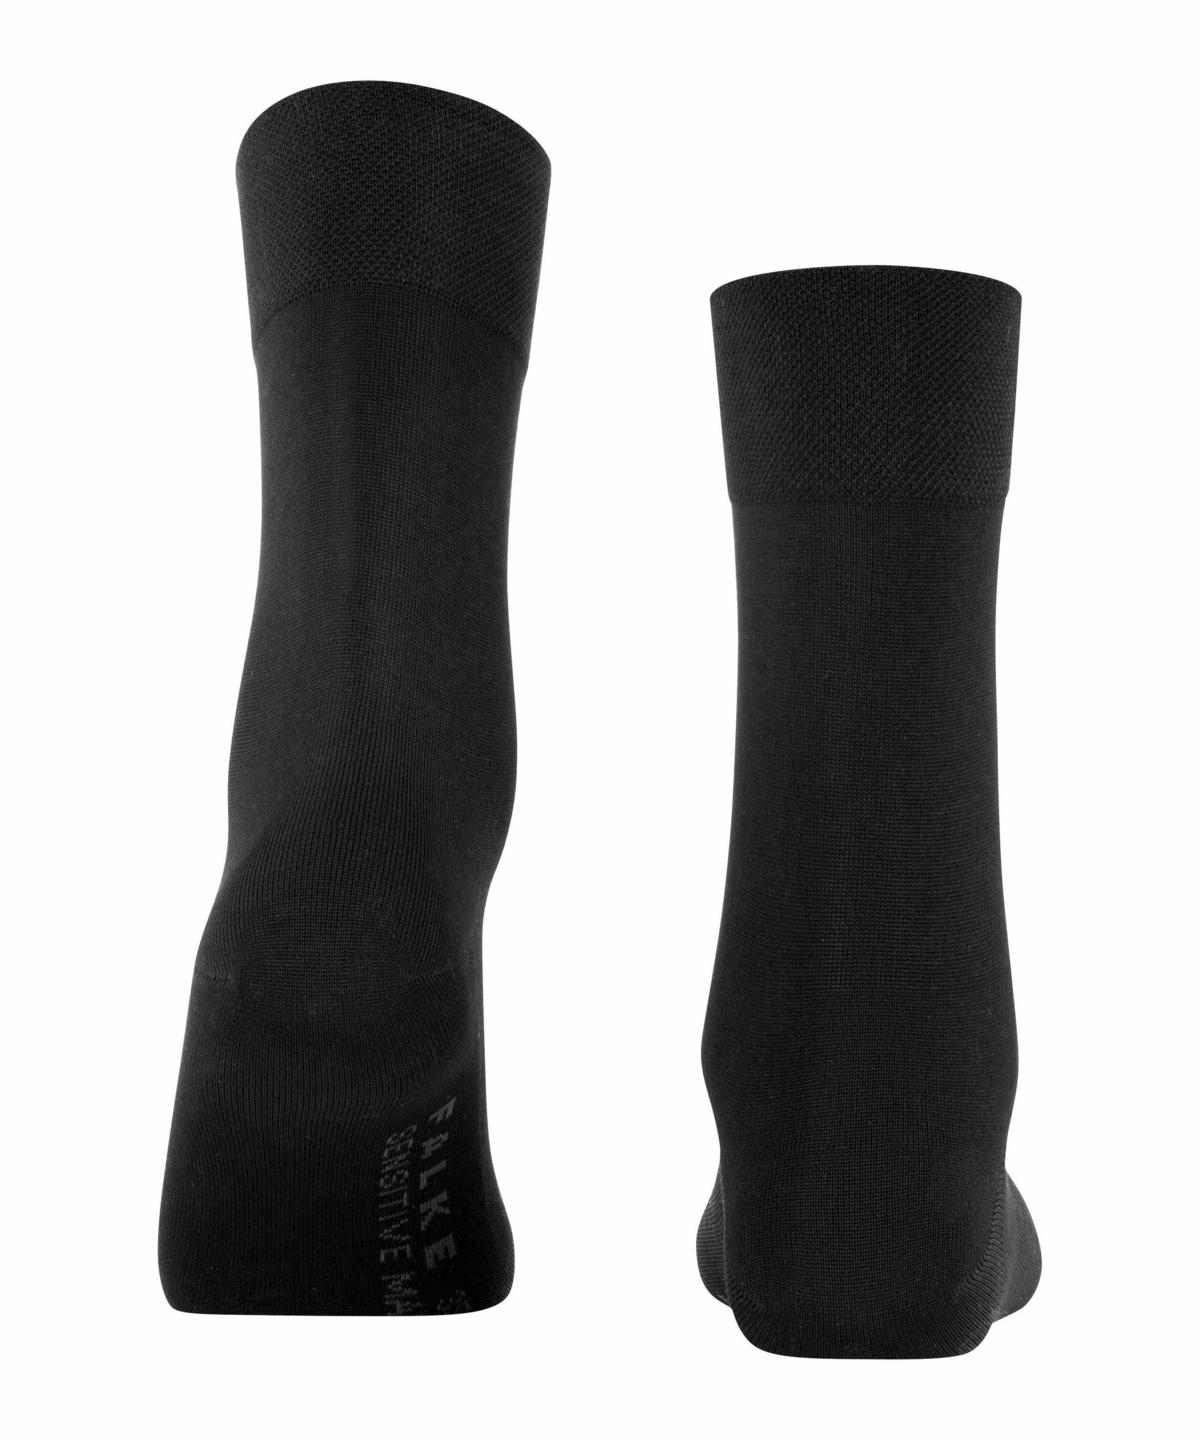 Versch Druckfreier Komfortbund ideal für Business- und Freizeitlooks Farben 1 Paar 96% Baumwolle FALKE Damen Socken Sensitive Malaga Größe 35-42 